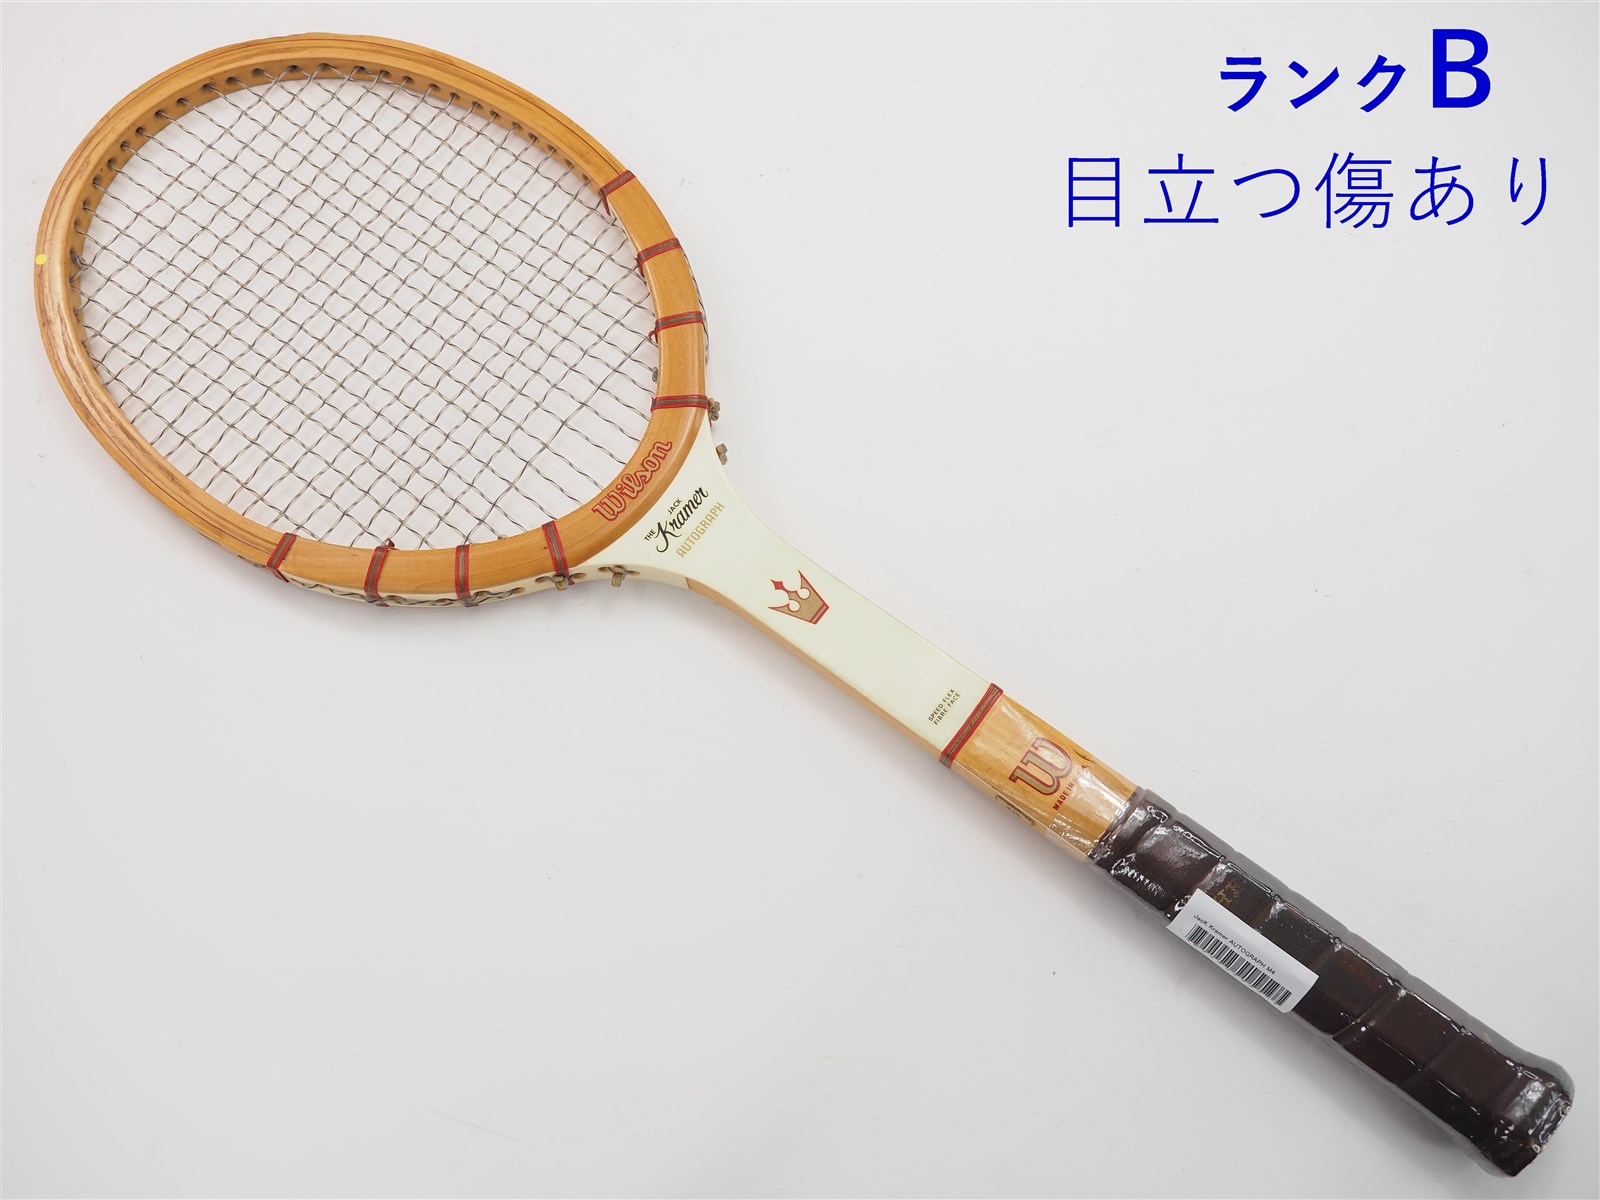 テニスラケット ウィルソン ジャック クレーマー オートグラフ (M4